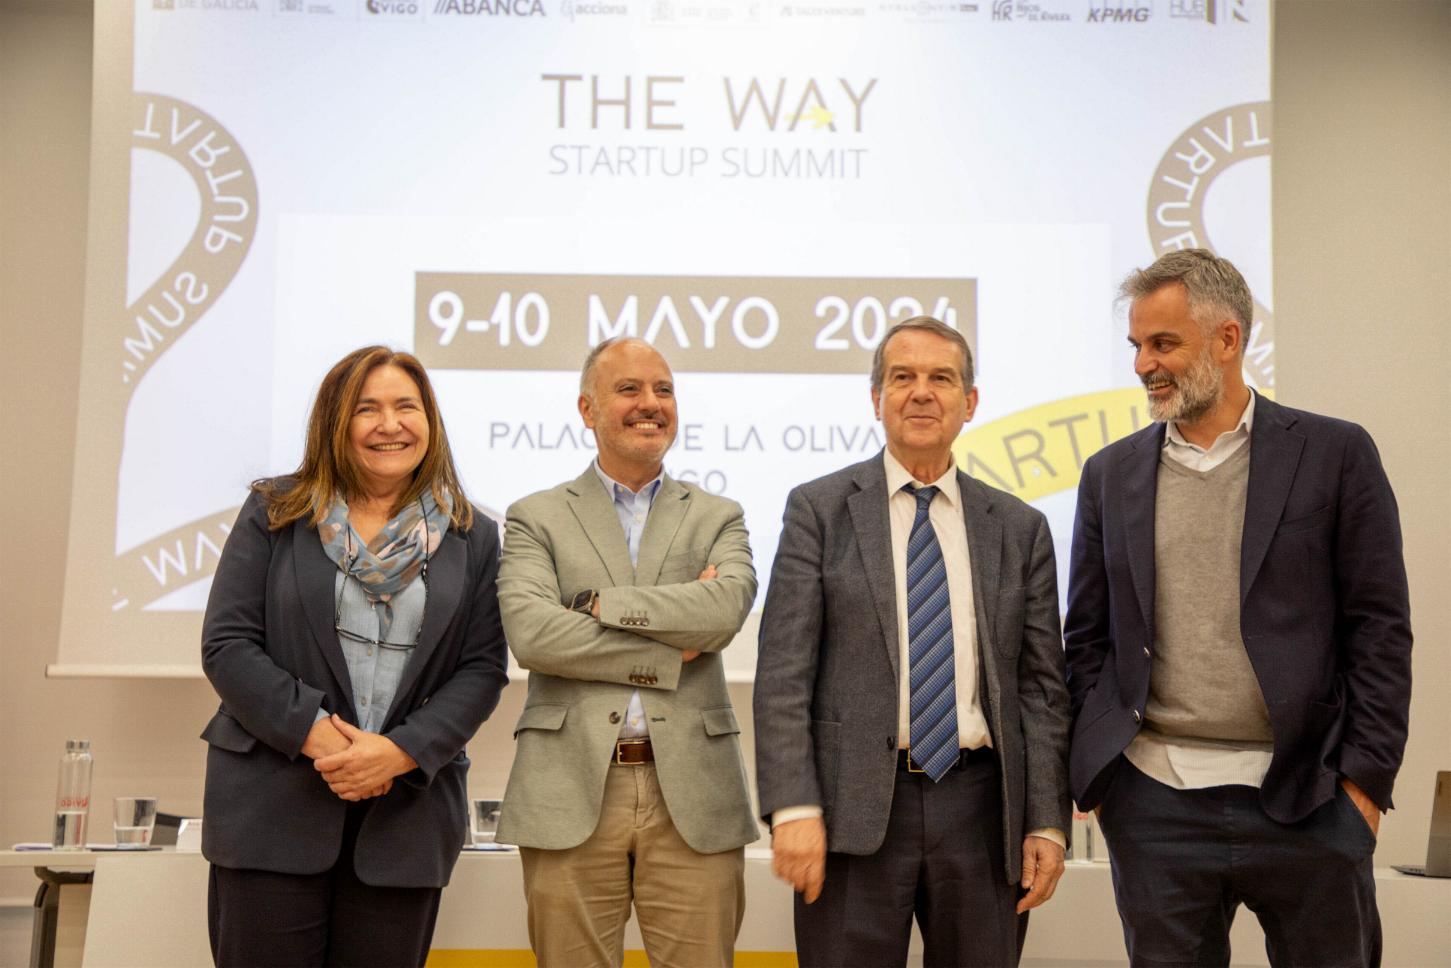 The Way Startup Summit 2024, fijado para el 9 y 10 de mayo, convertirá a Vigo en capital de emprendimiento, innovación e inversión a nivel estatal